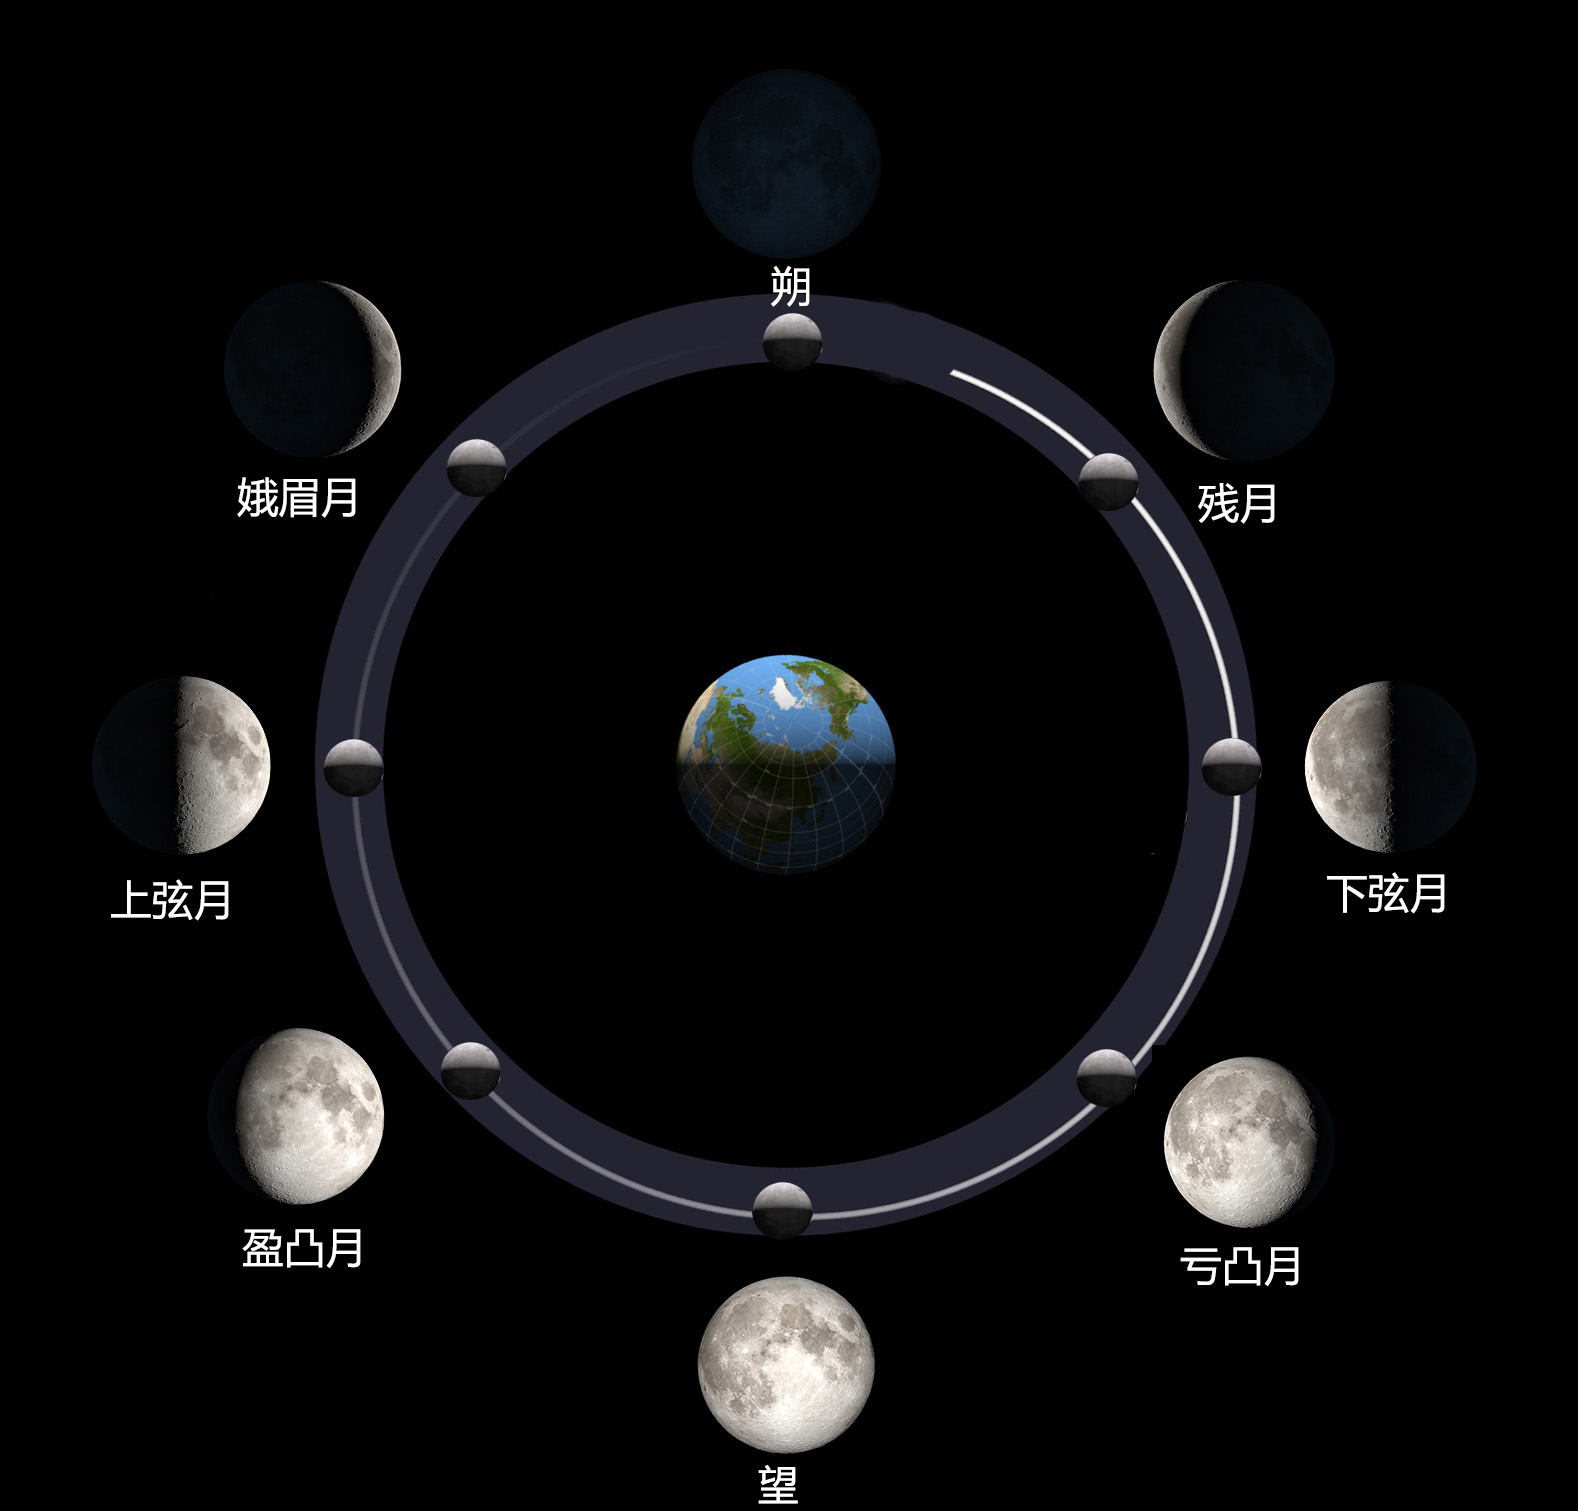 这些月相,按顺序交替变化,周而复始,形成了完整的朔望周期.